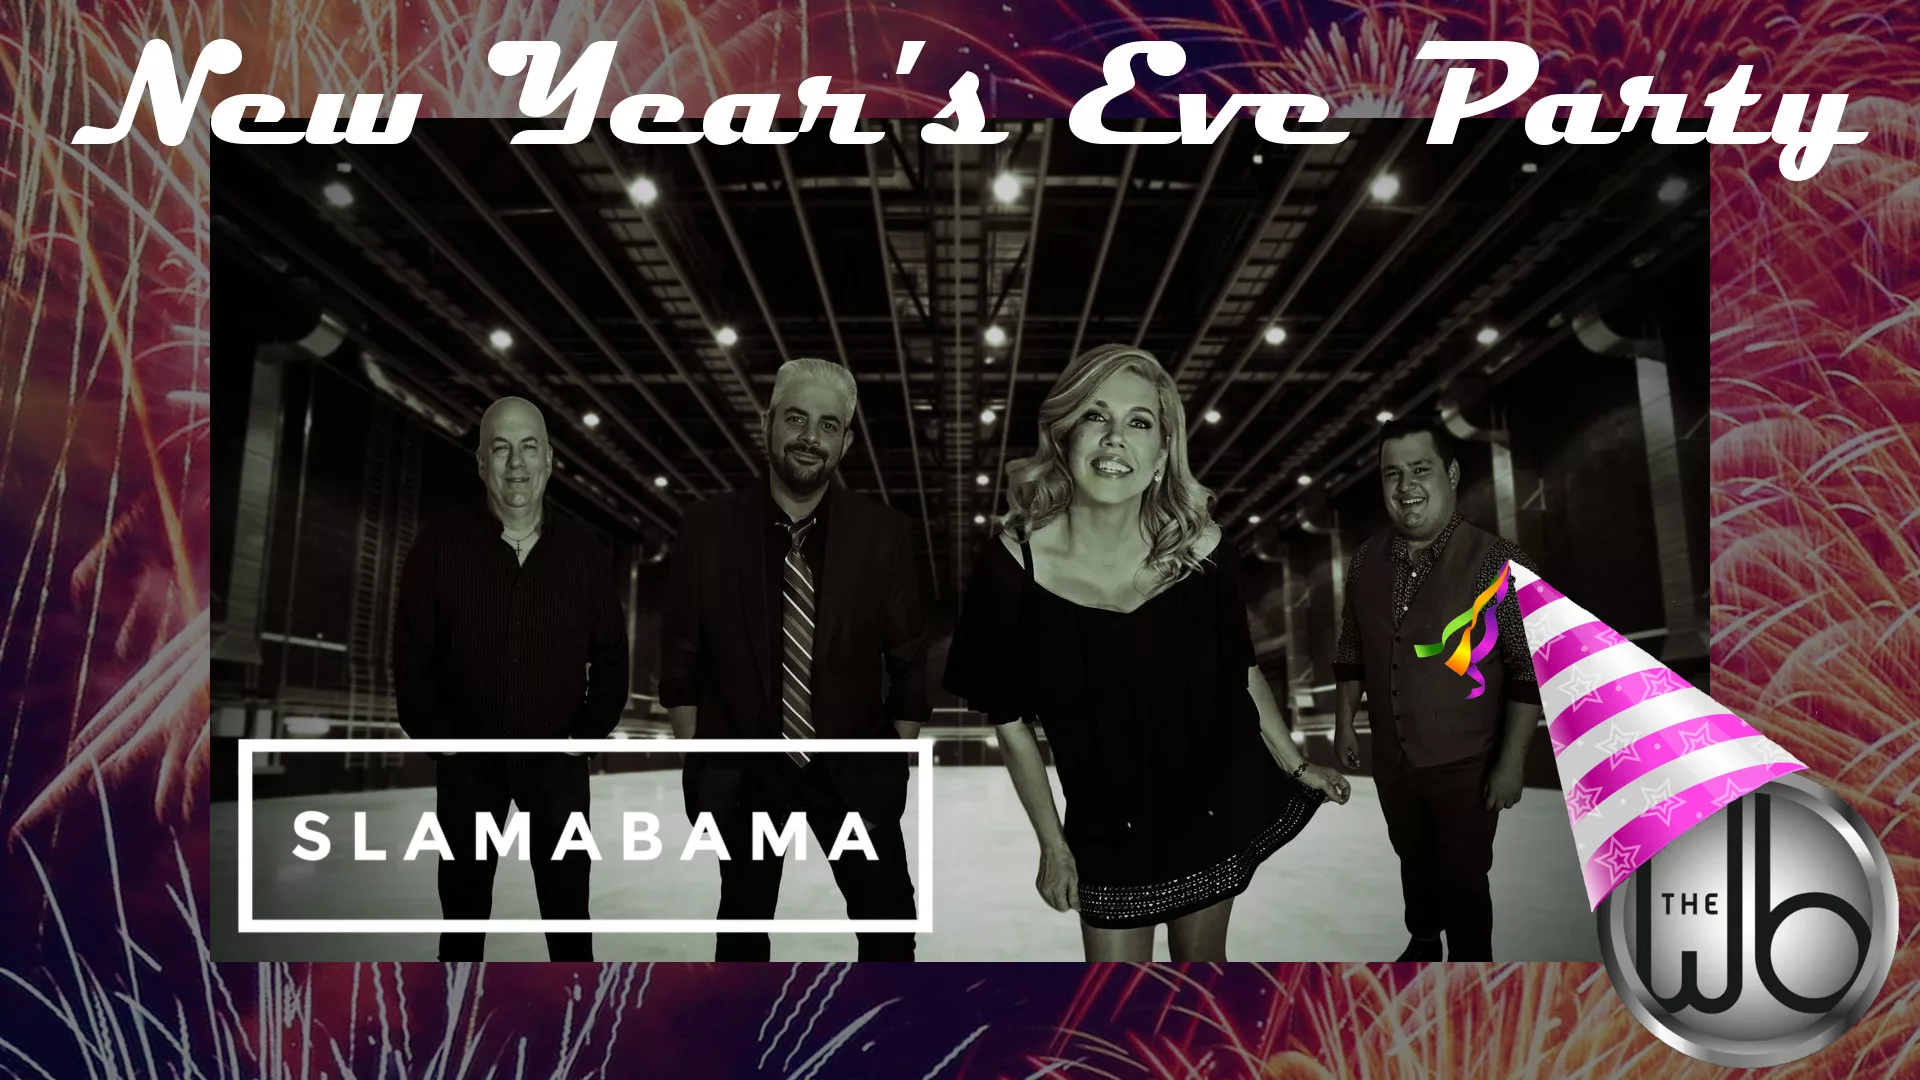 New Year's Eve with Slamabama